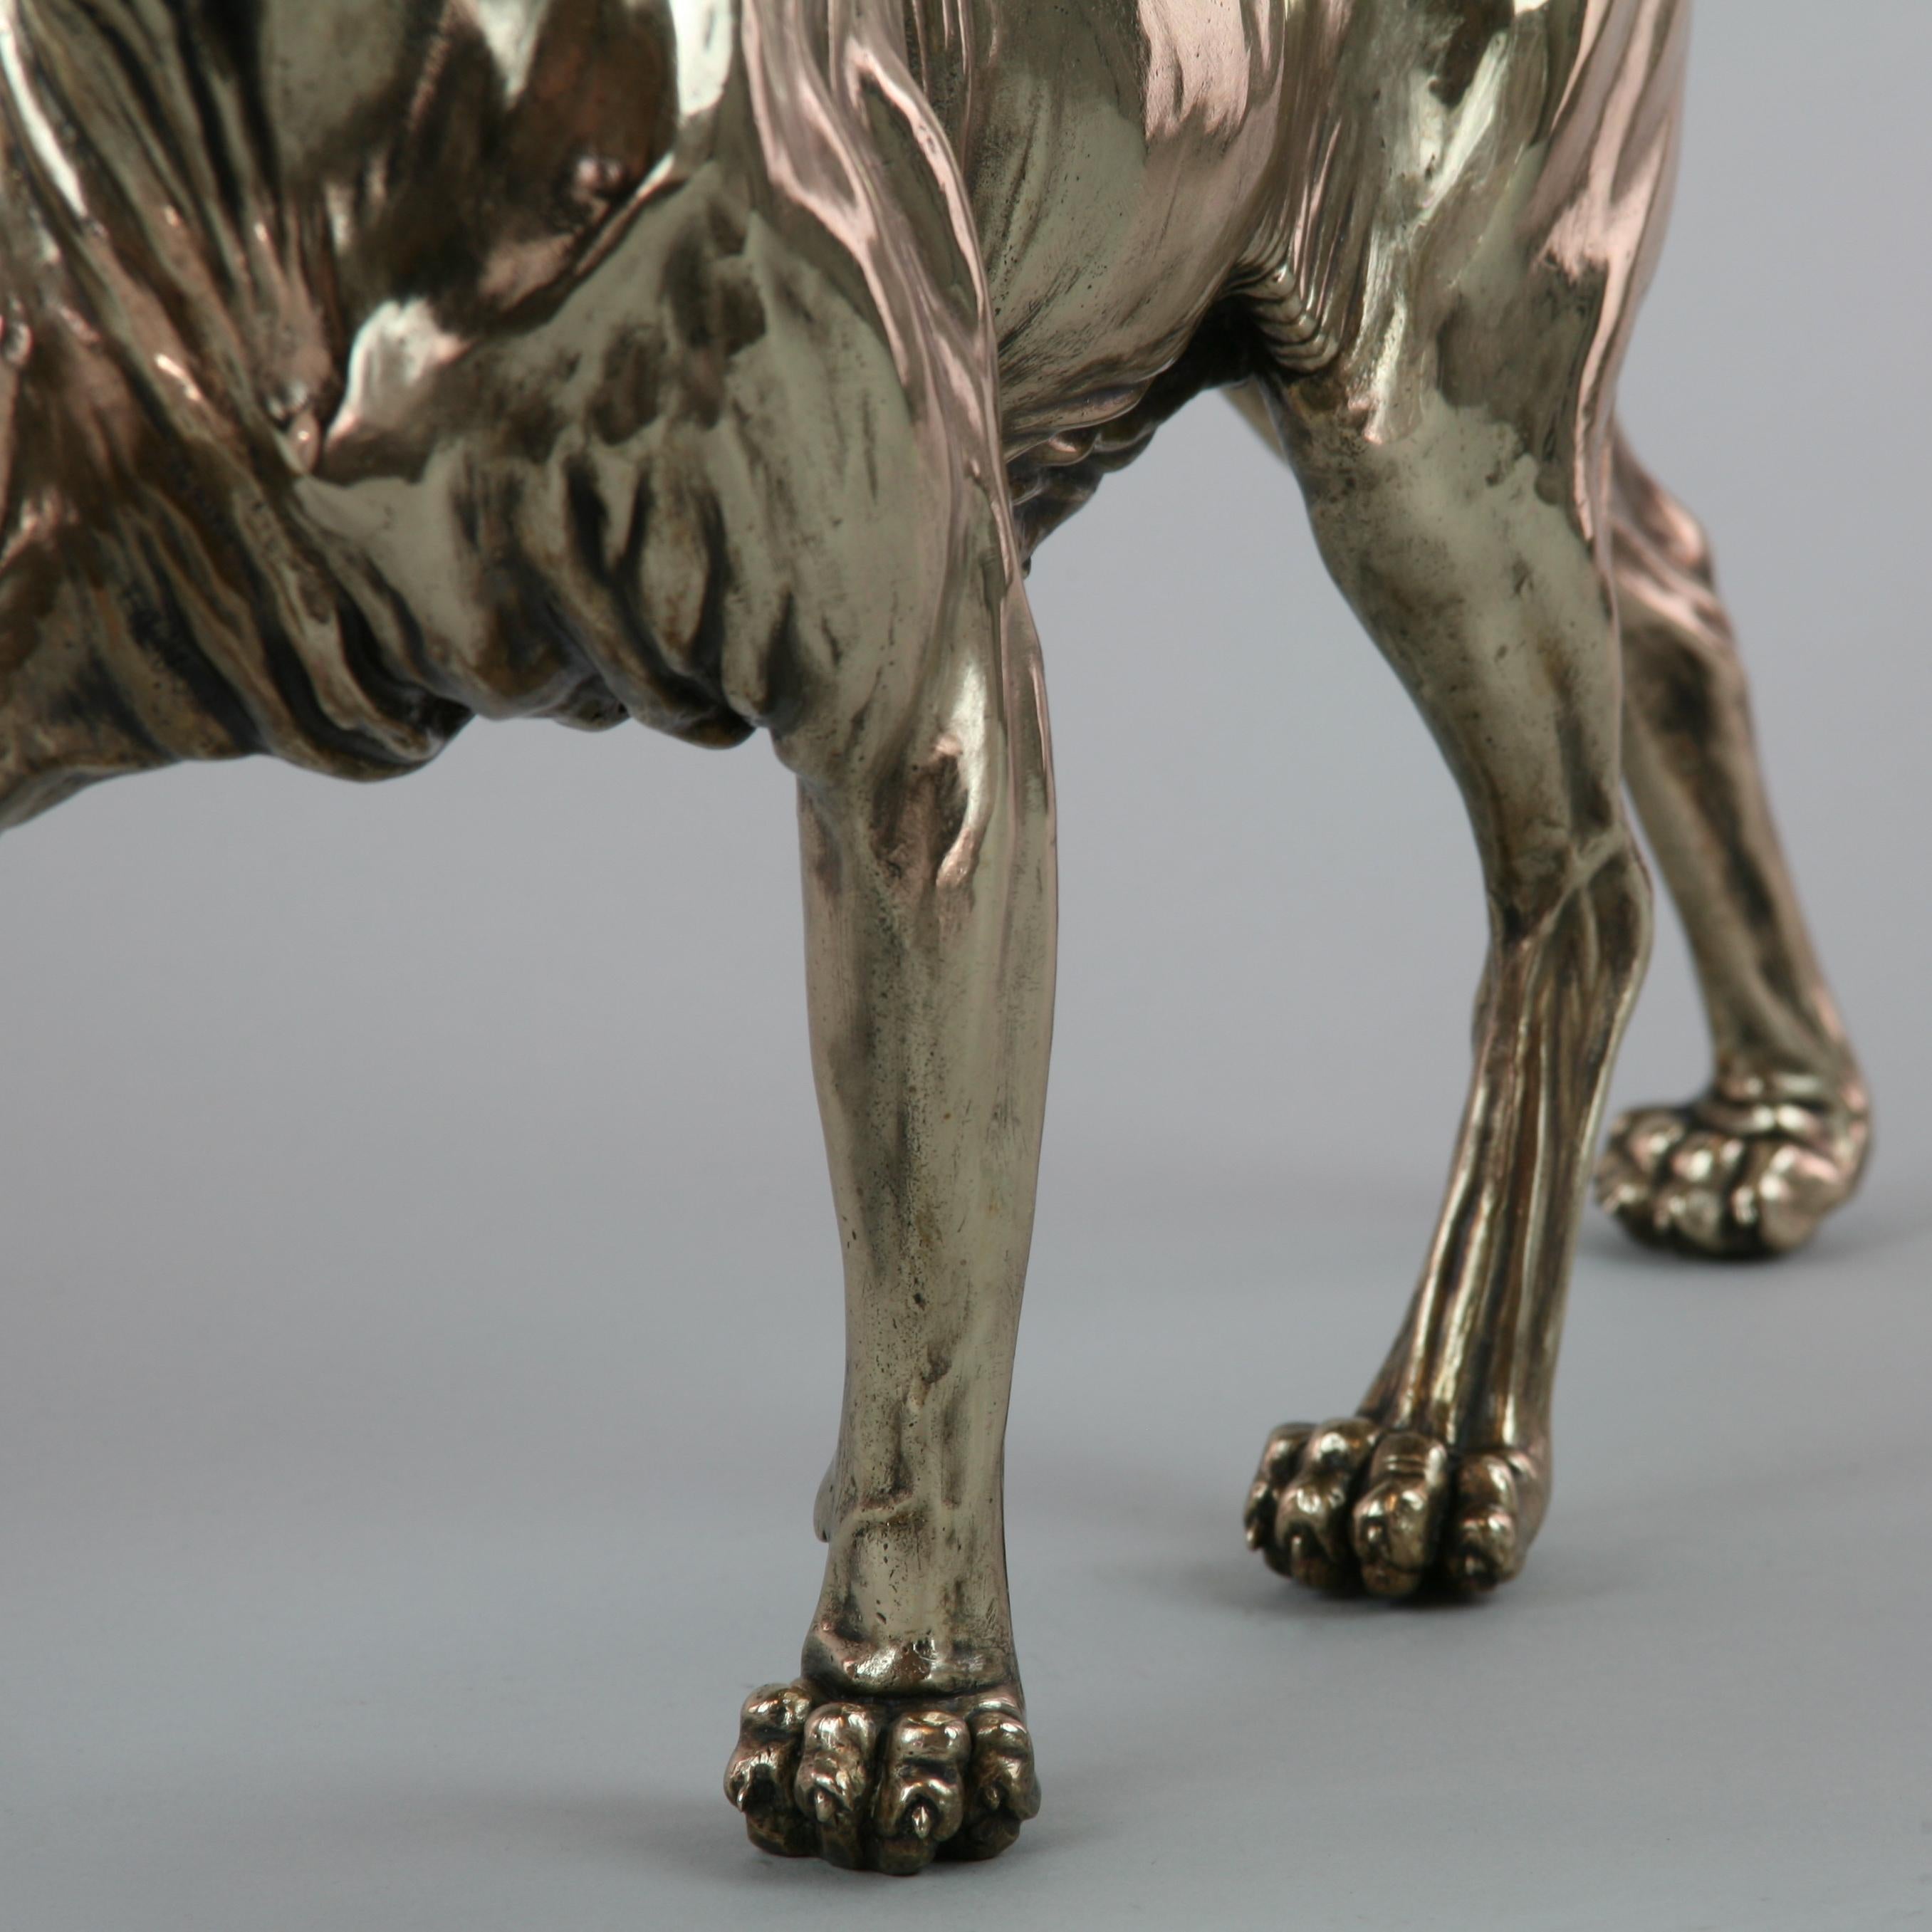 Sphynx Cat II - sculpture wildlife animal limited edition bronze modern marine 4